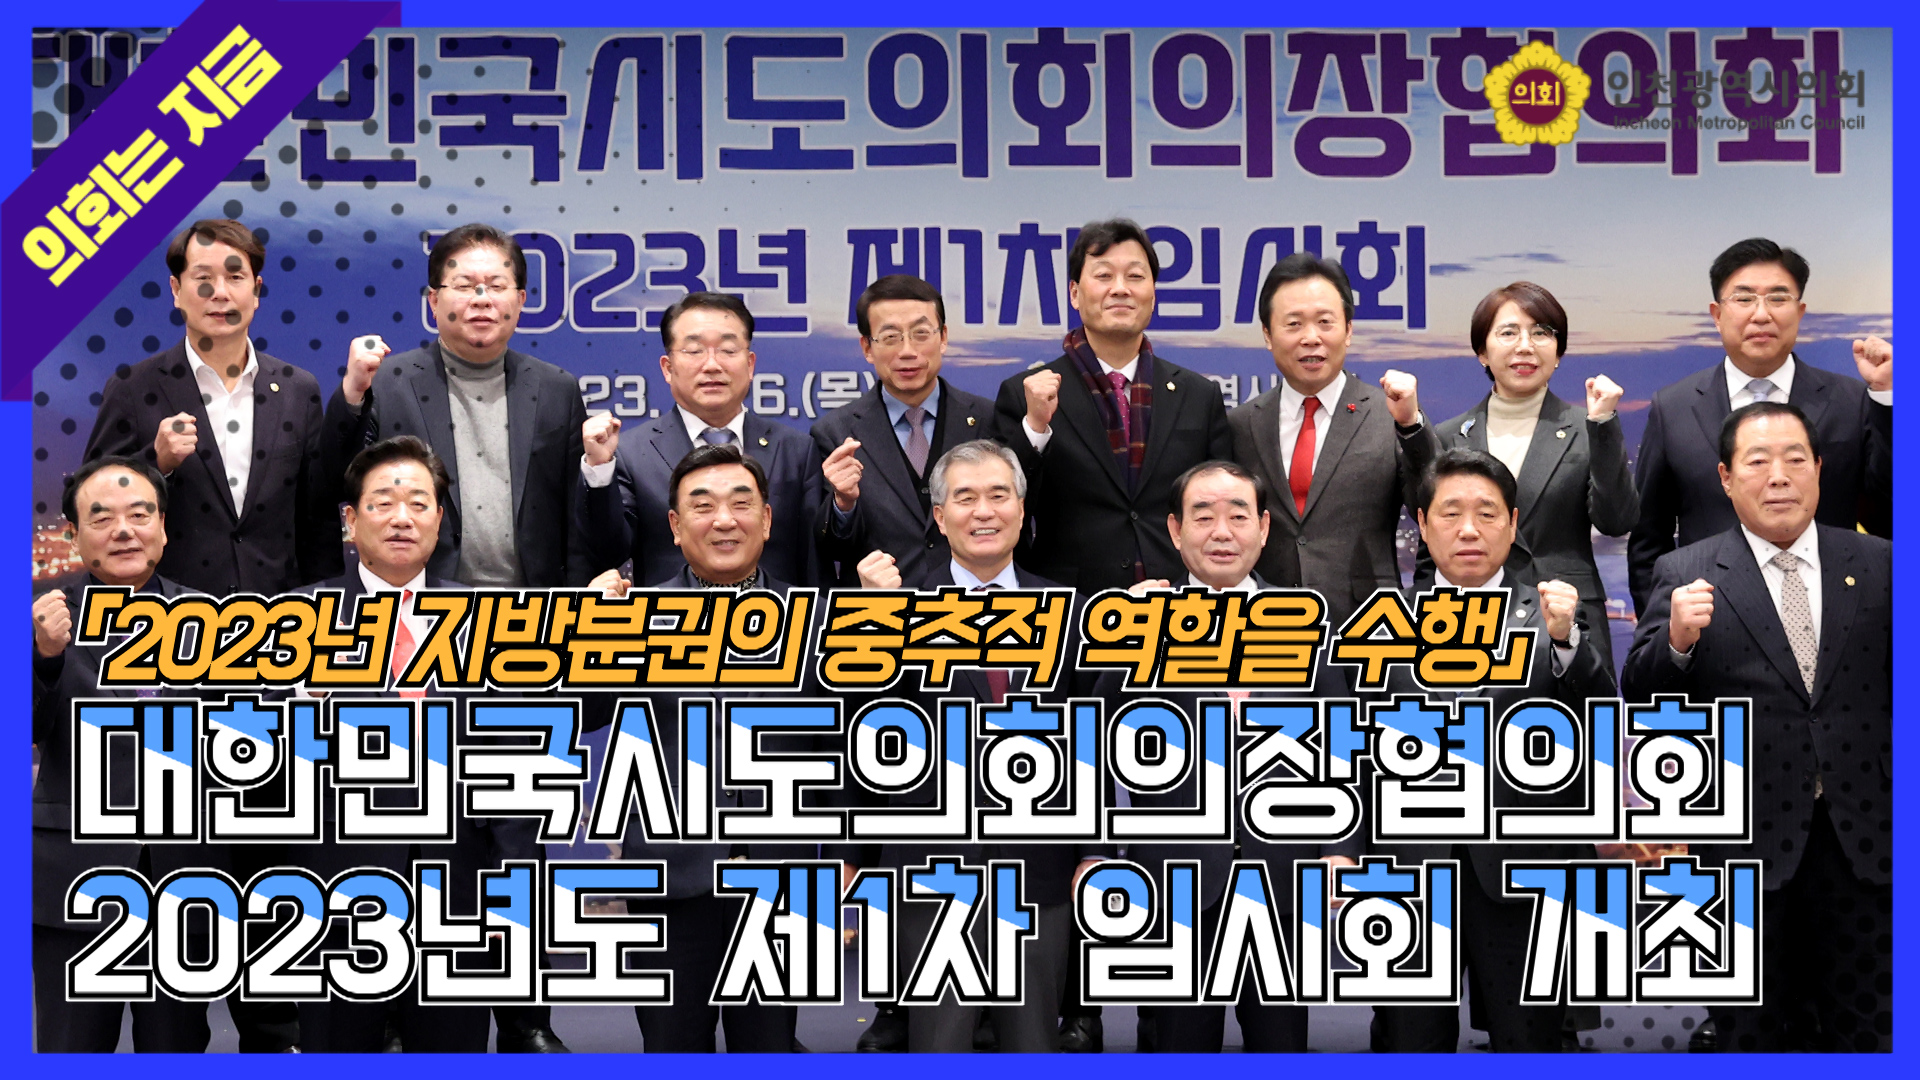 대한민국시도의회의장협의회 2023년도 제1차 임시회 개최 (2023. 1. 26.) 사진